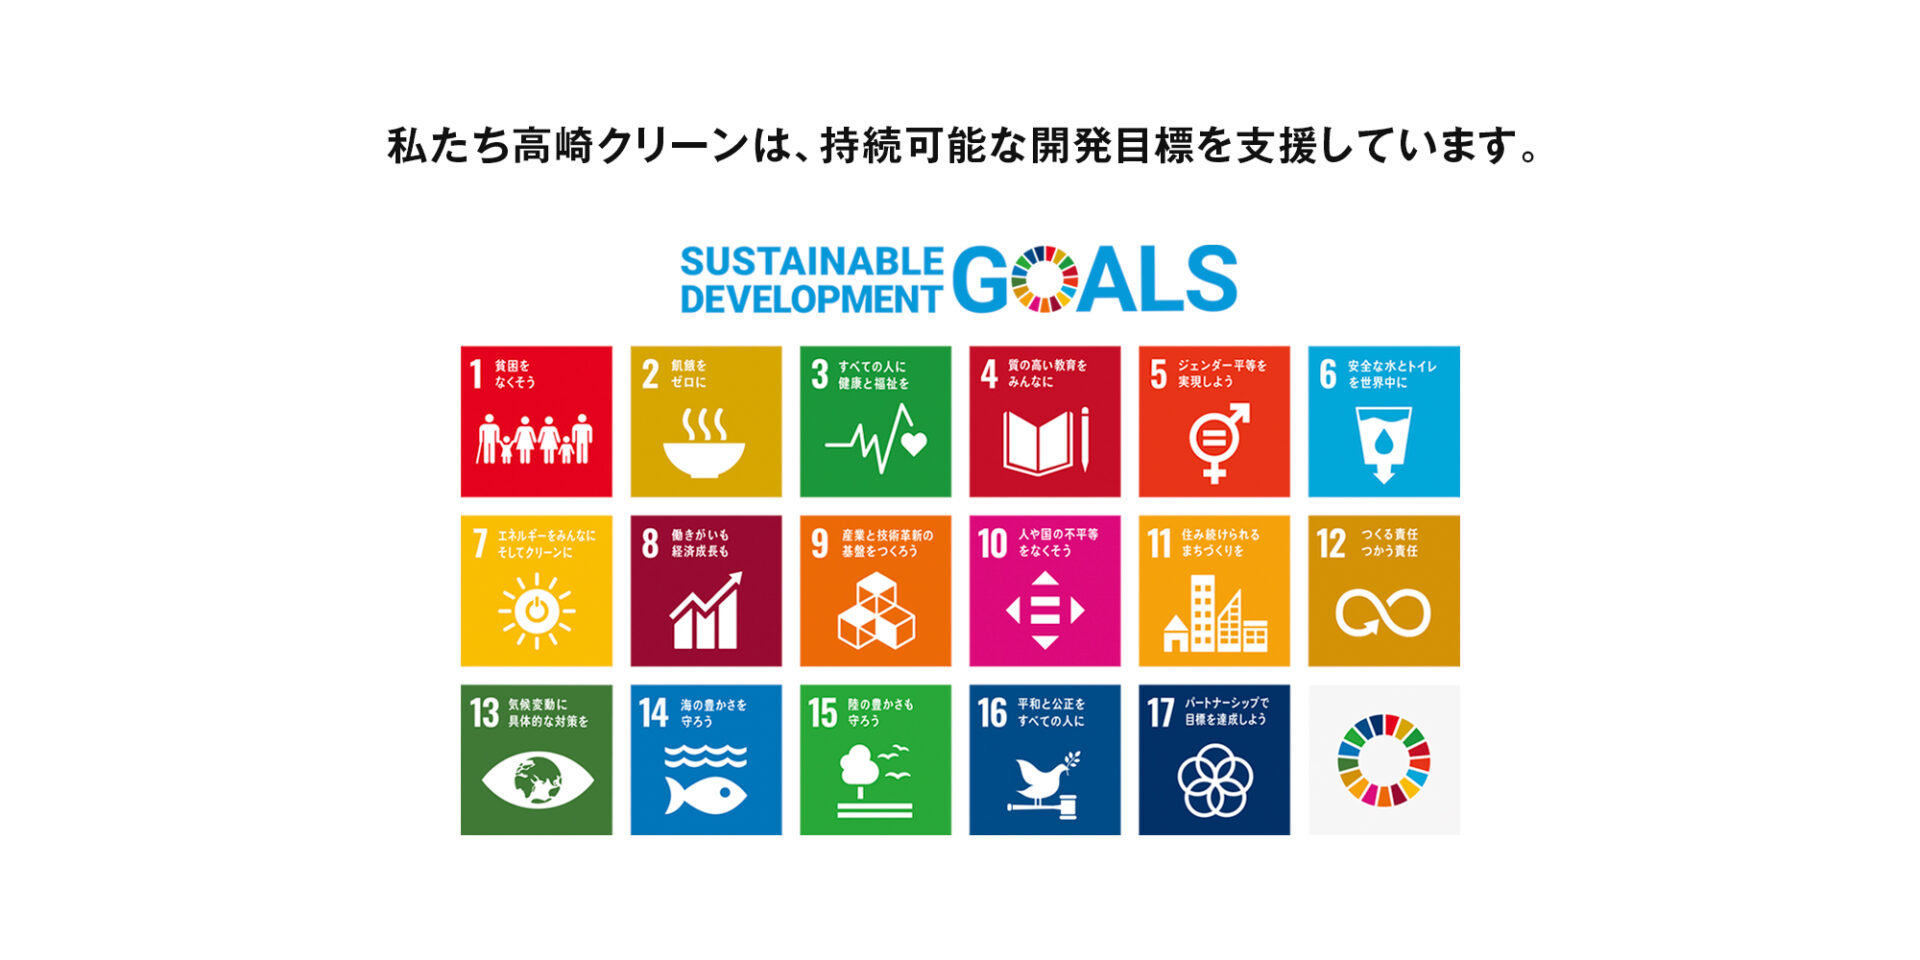 私たち高崎クリーンは、持続可能な開発目標を支援しています。